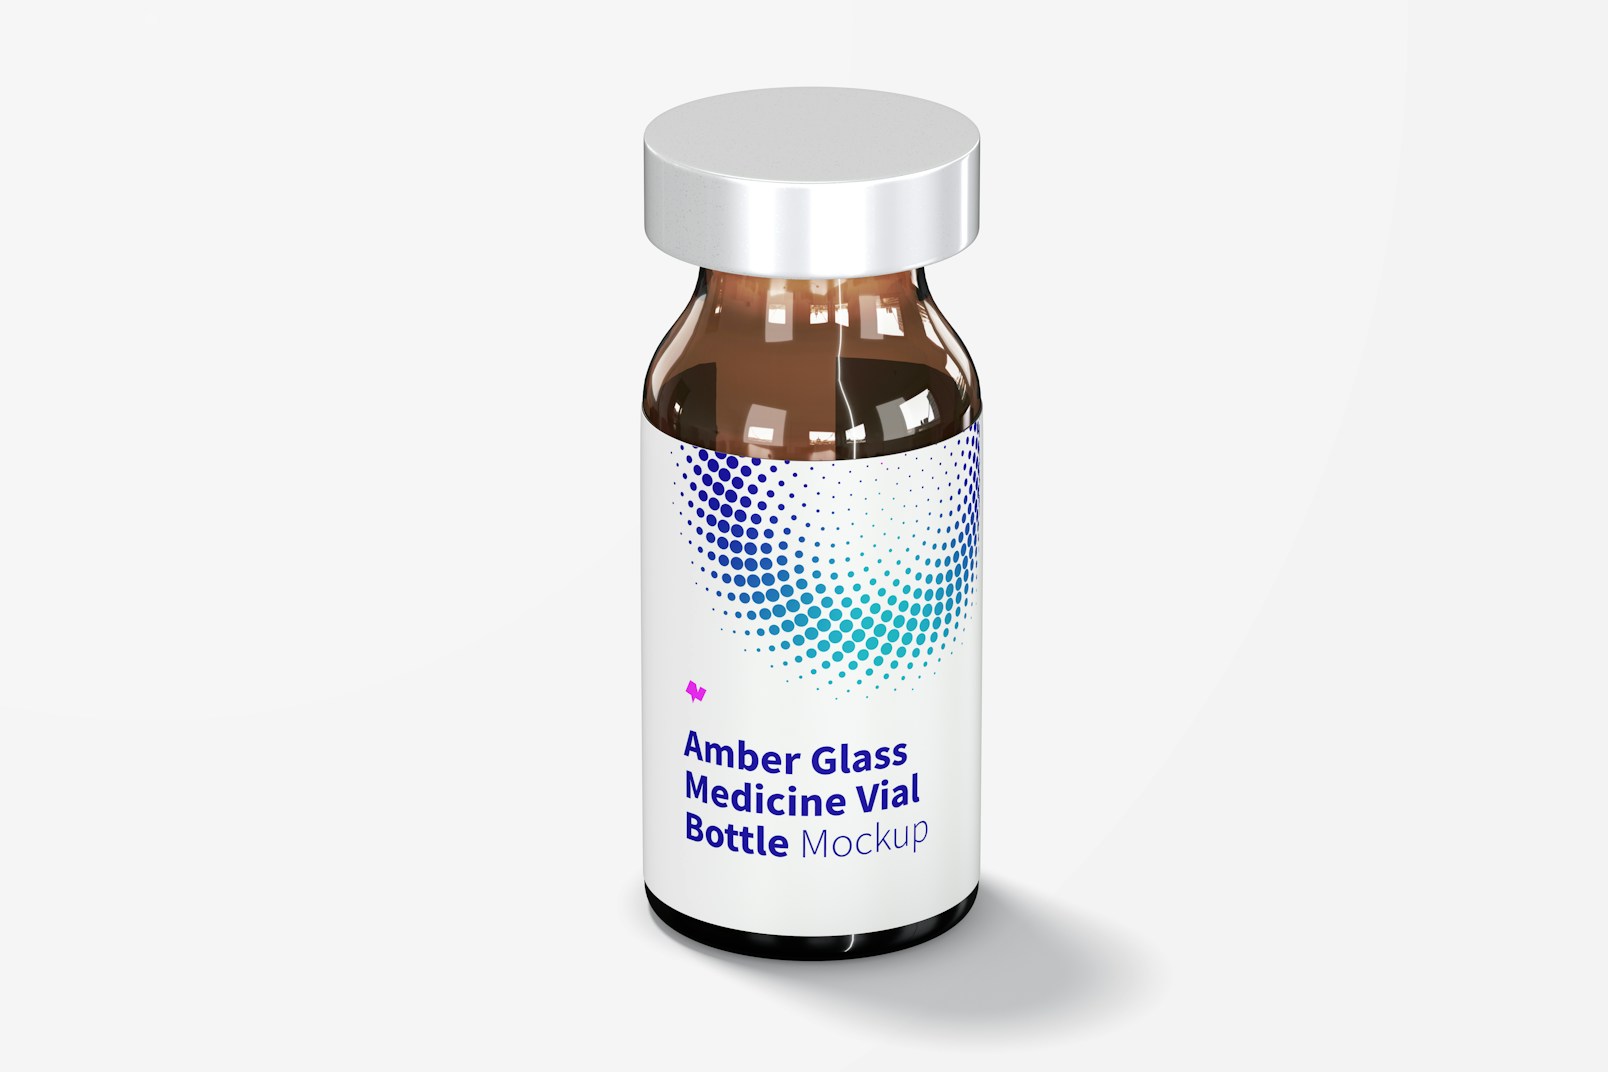 Amber Glass Medicine Vial Bottle Mockup